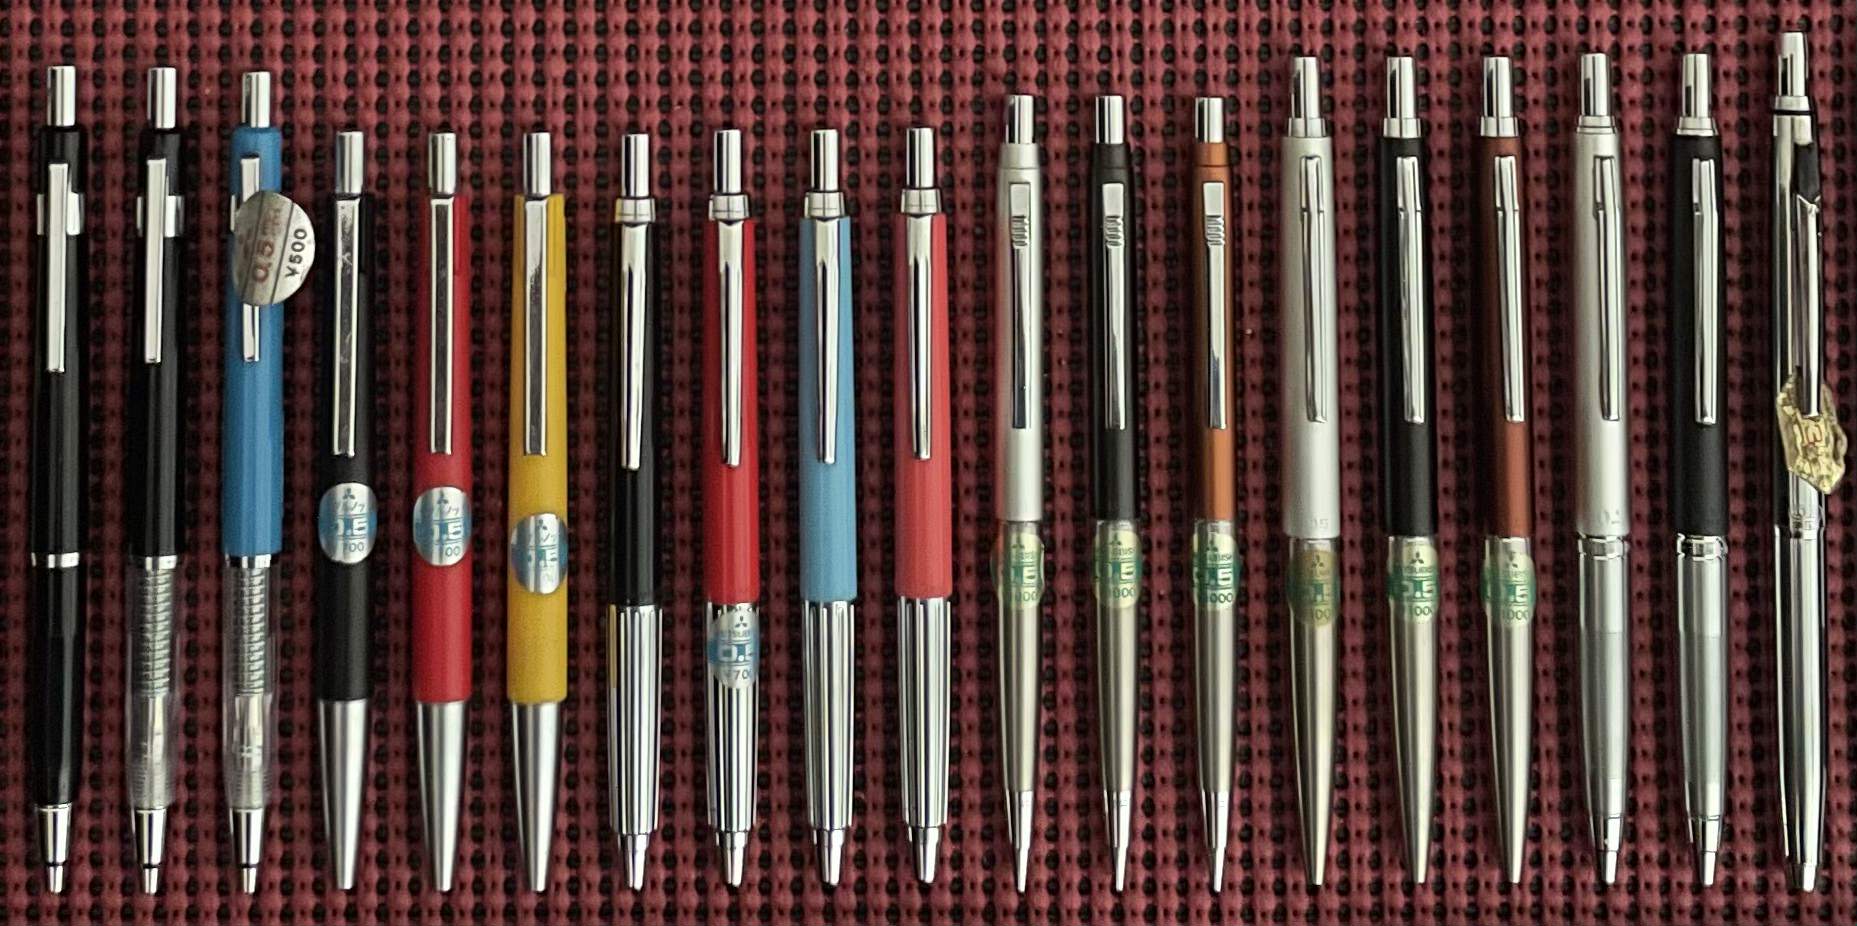 Mitsubishi double-knock mechanical pencils